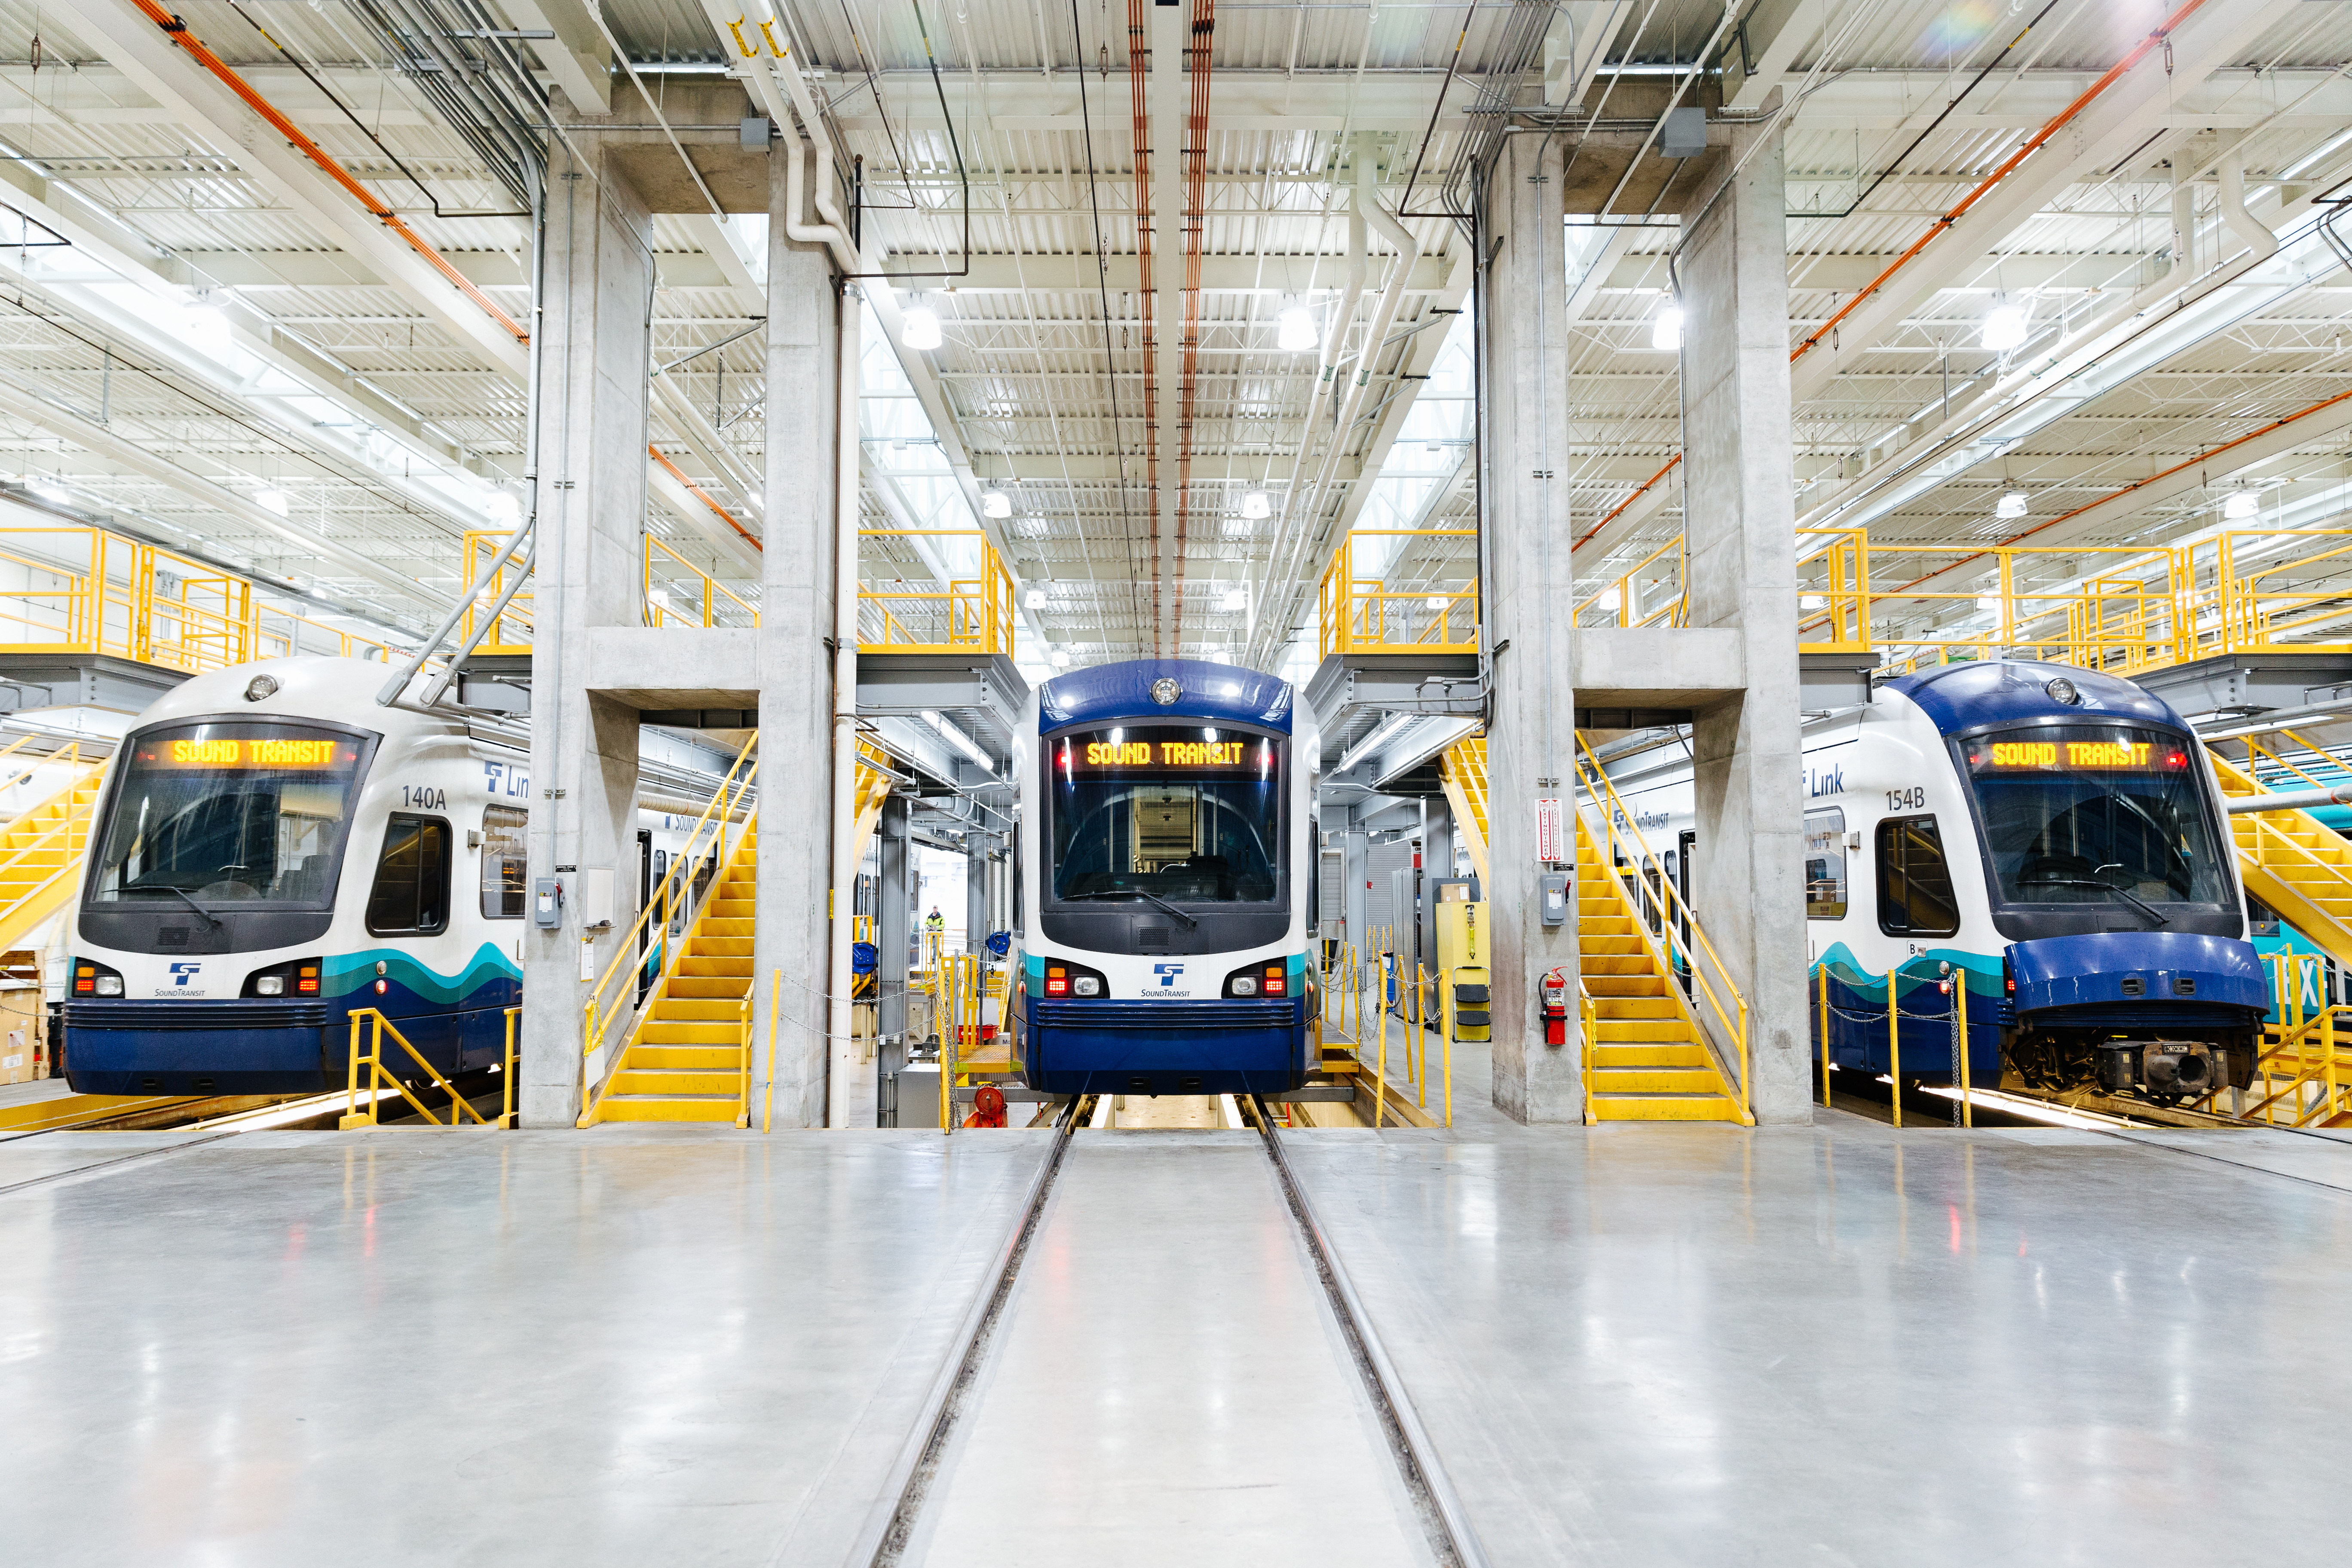 Los trenes de Link light rail están dispuestos en plataformas de mantenimiento del edificio de almacenamiento de Link. Se proporcionan escaleras en la plataforma, de modo que los trabajadores pueden acceder tanto a la parte superior como a la inferior del tren para realizar mantenimiento de rutina.